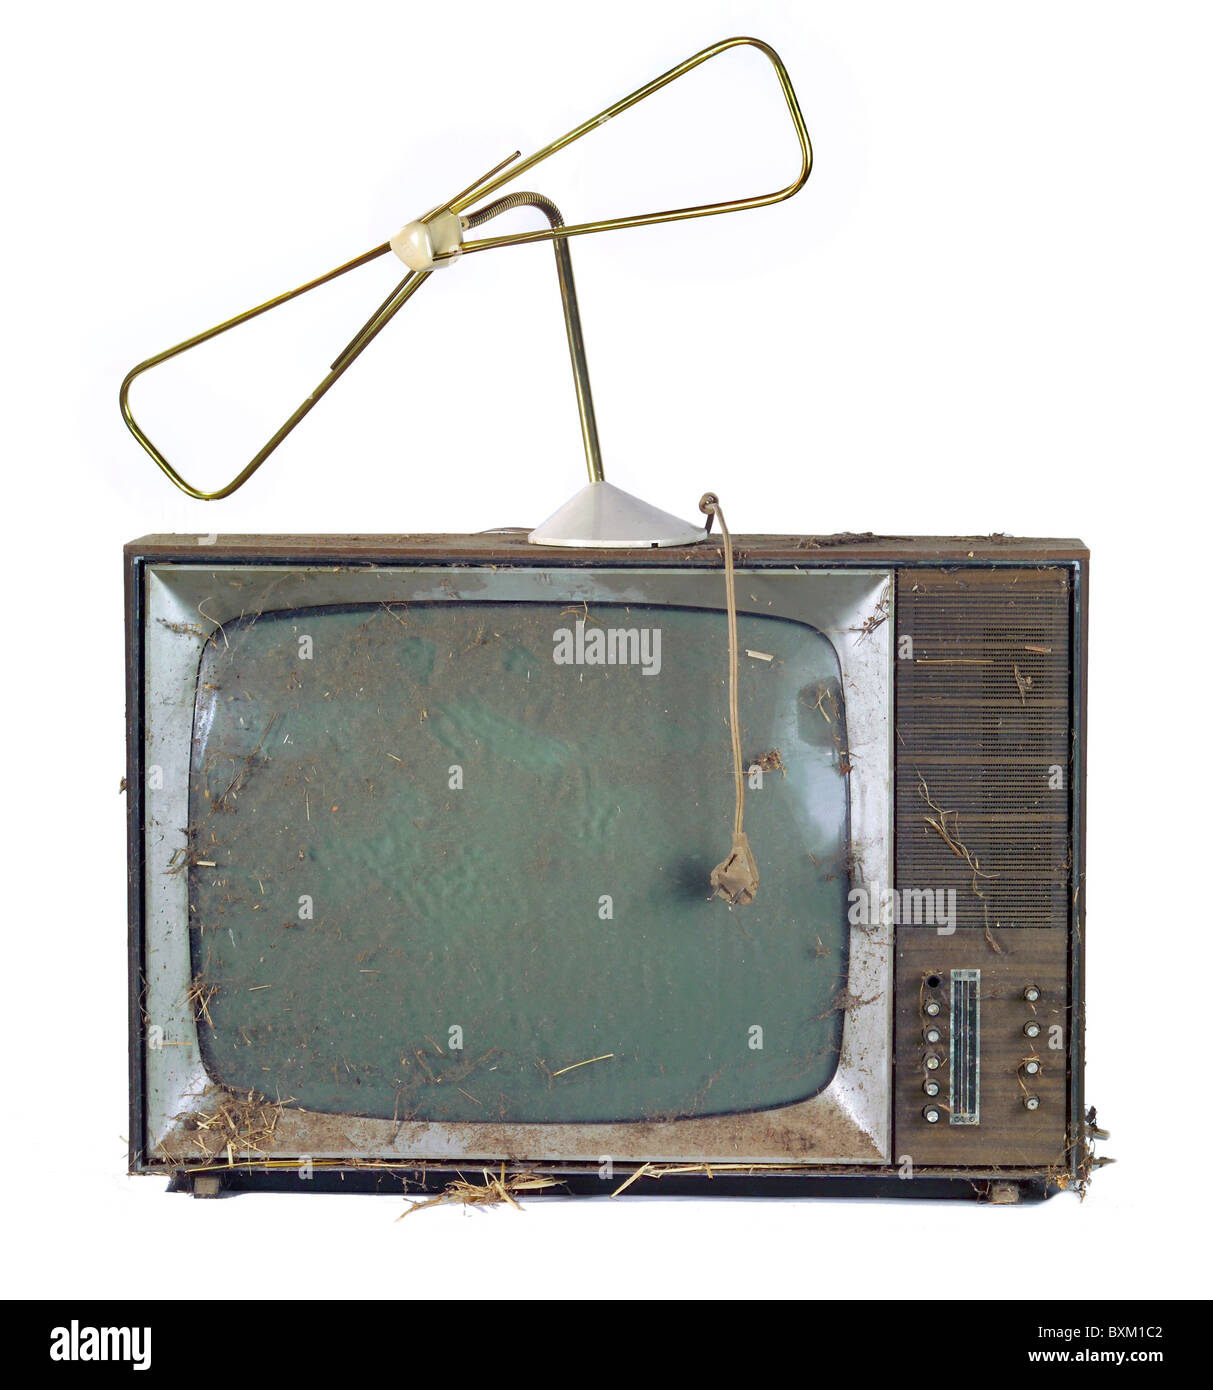 Televisione / trasmissione, televisori, Grätz Markgraf 1121, Germania, 1968, diritti aggiuntivi-clearences-non disponibile Foto Stock